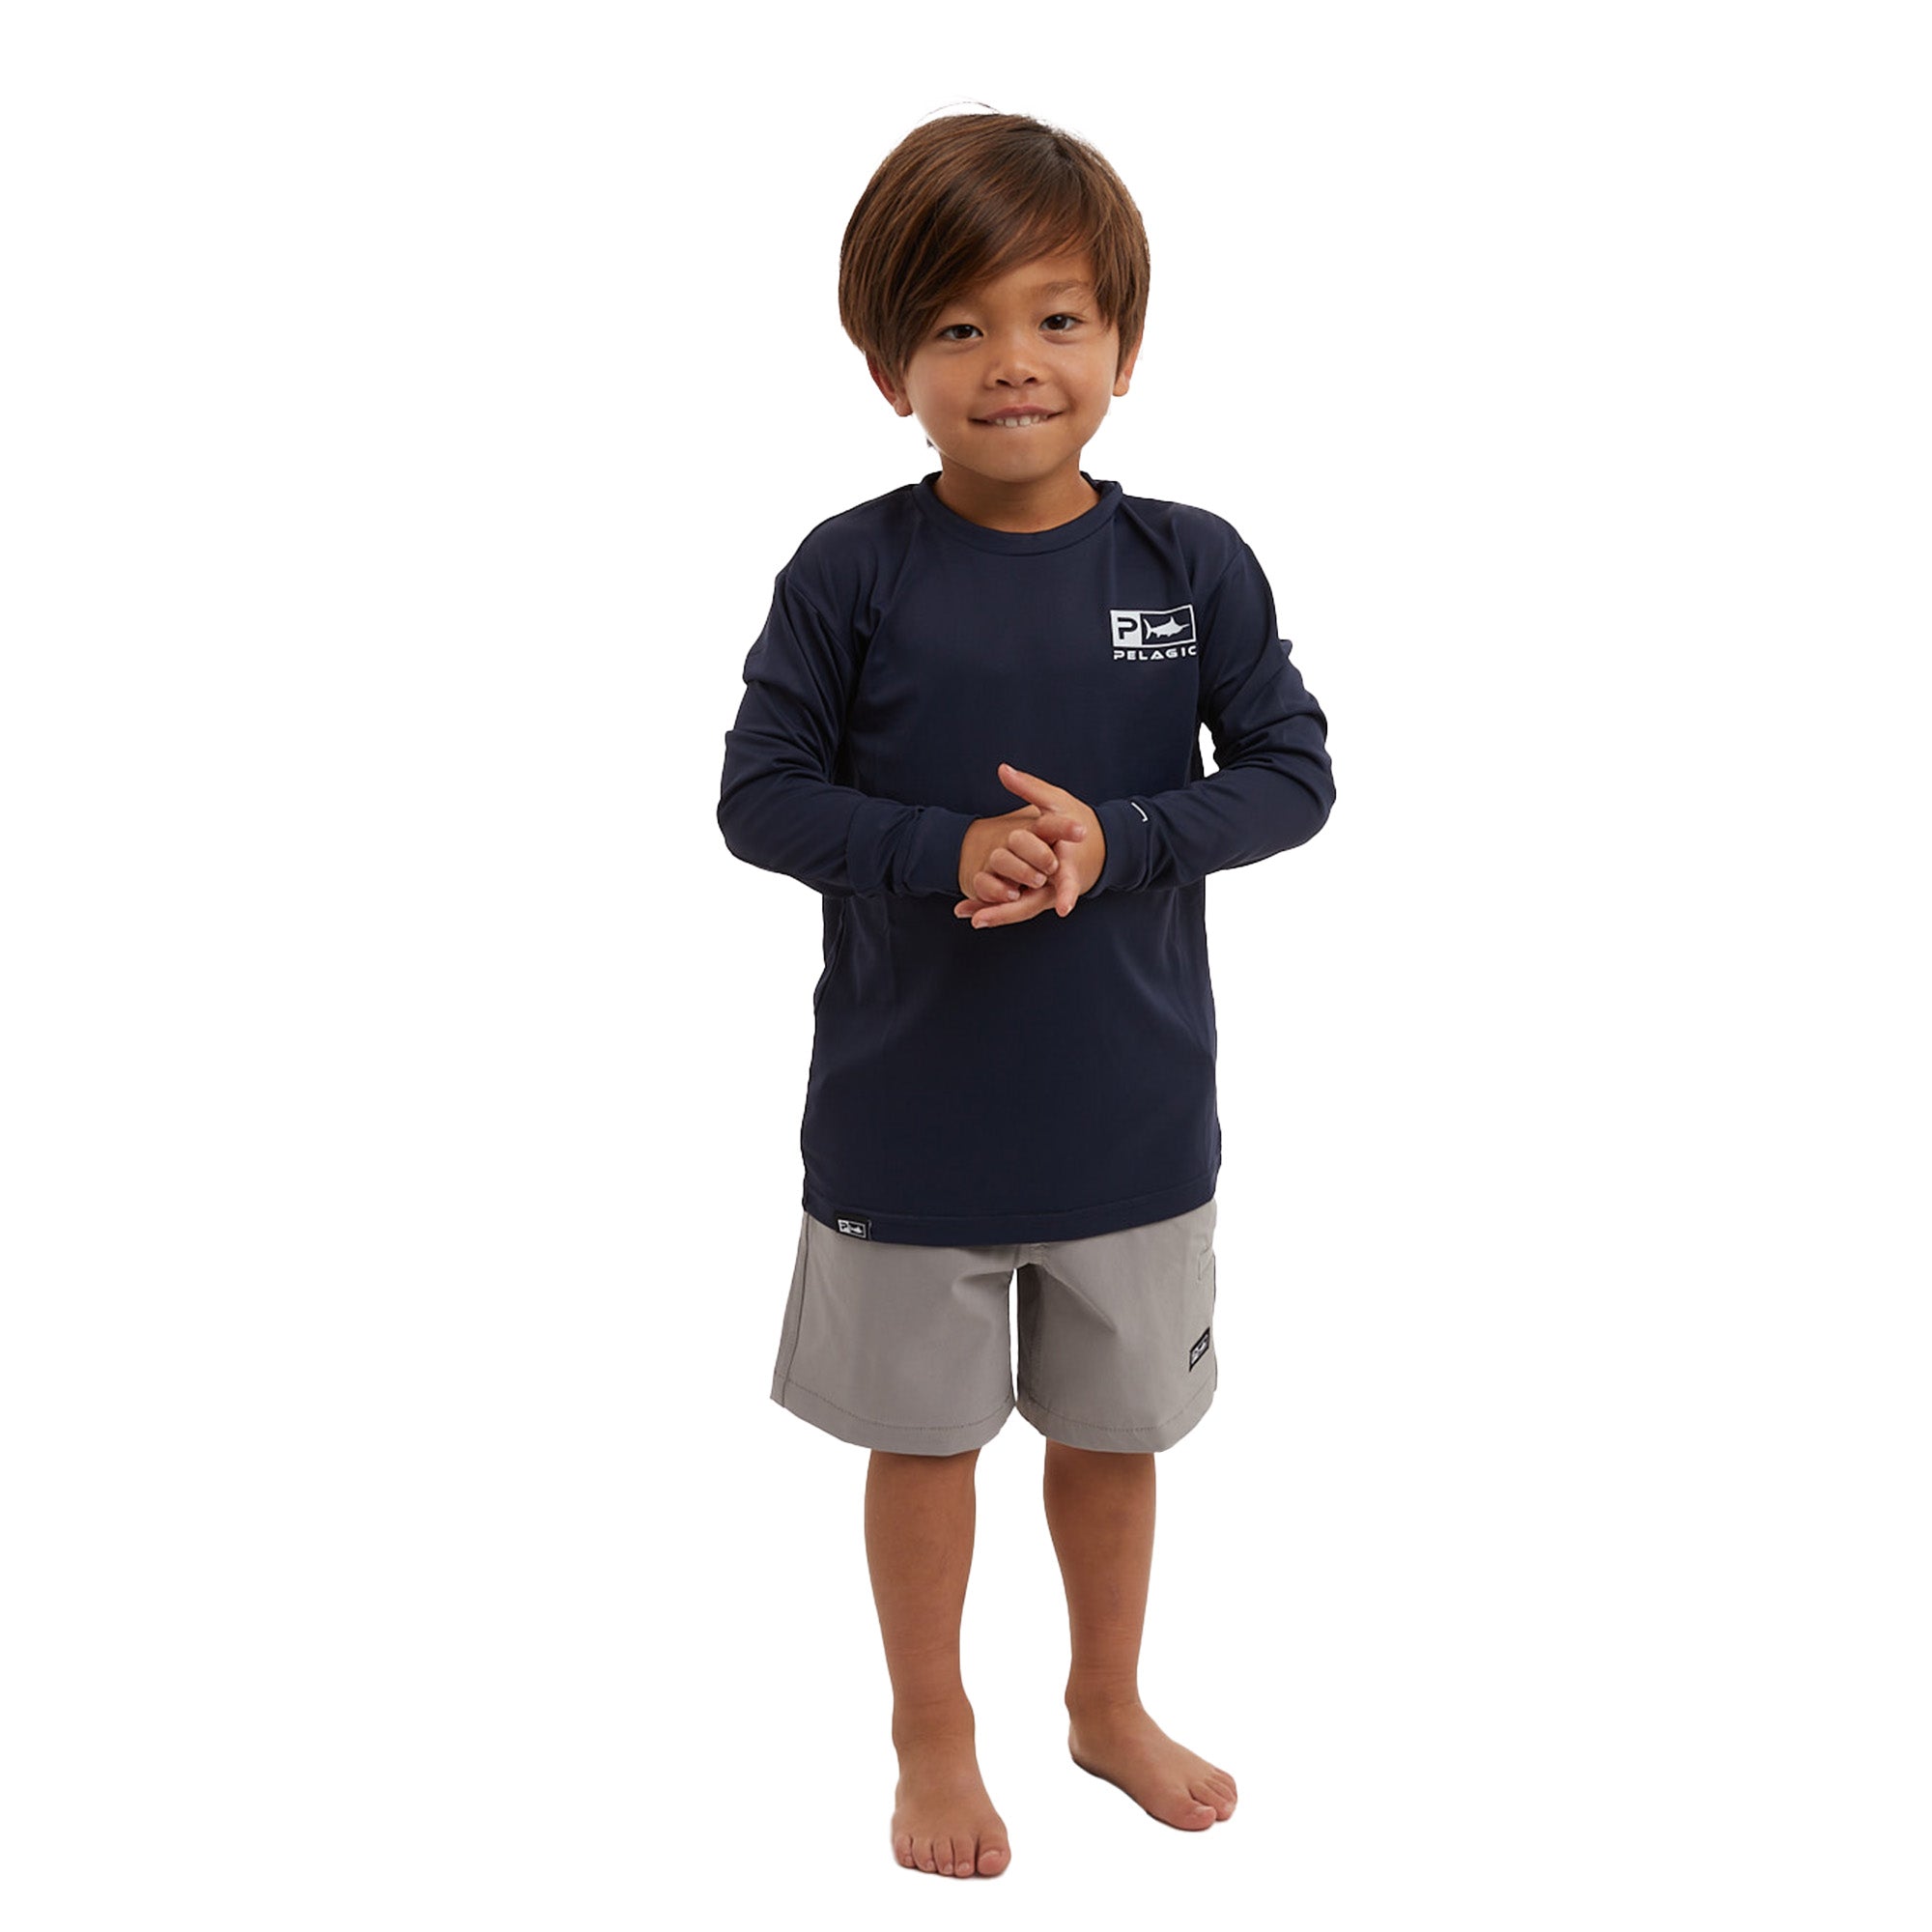 Pelagic Kid's Vaportek Fishing Shirt-3T